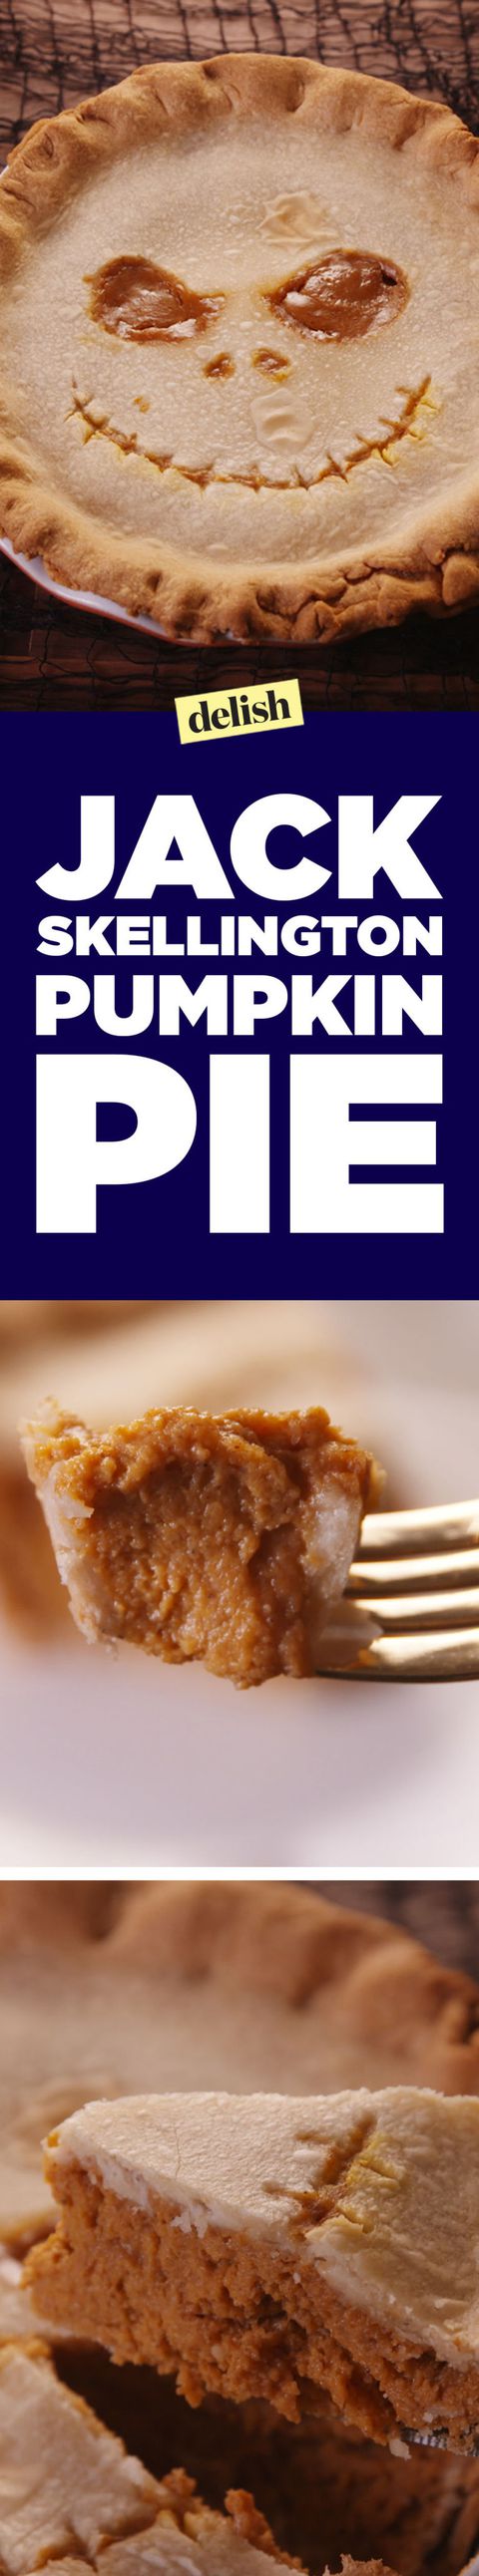 jekk Skellington Pie Pinterest